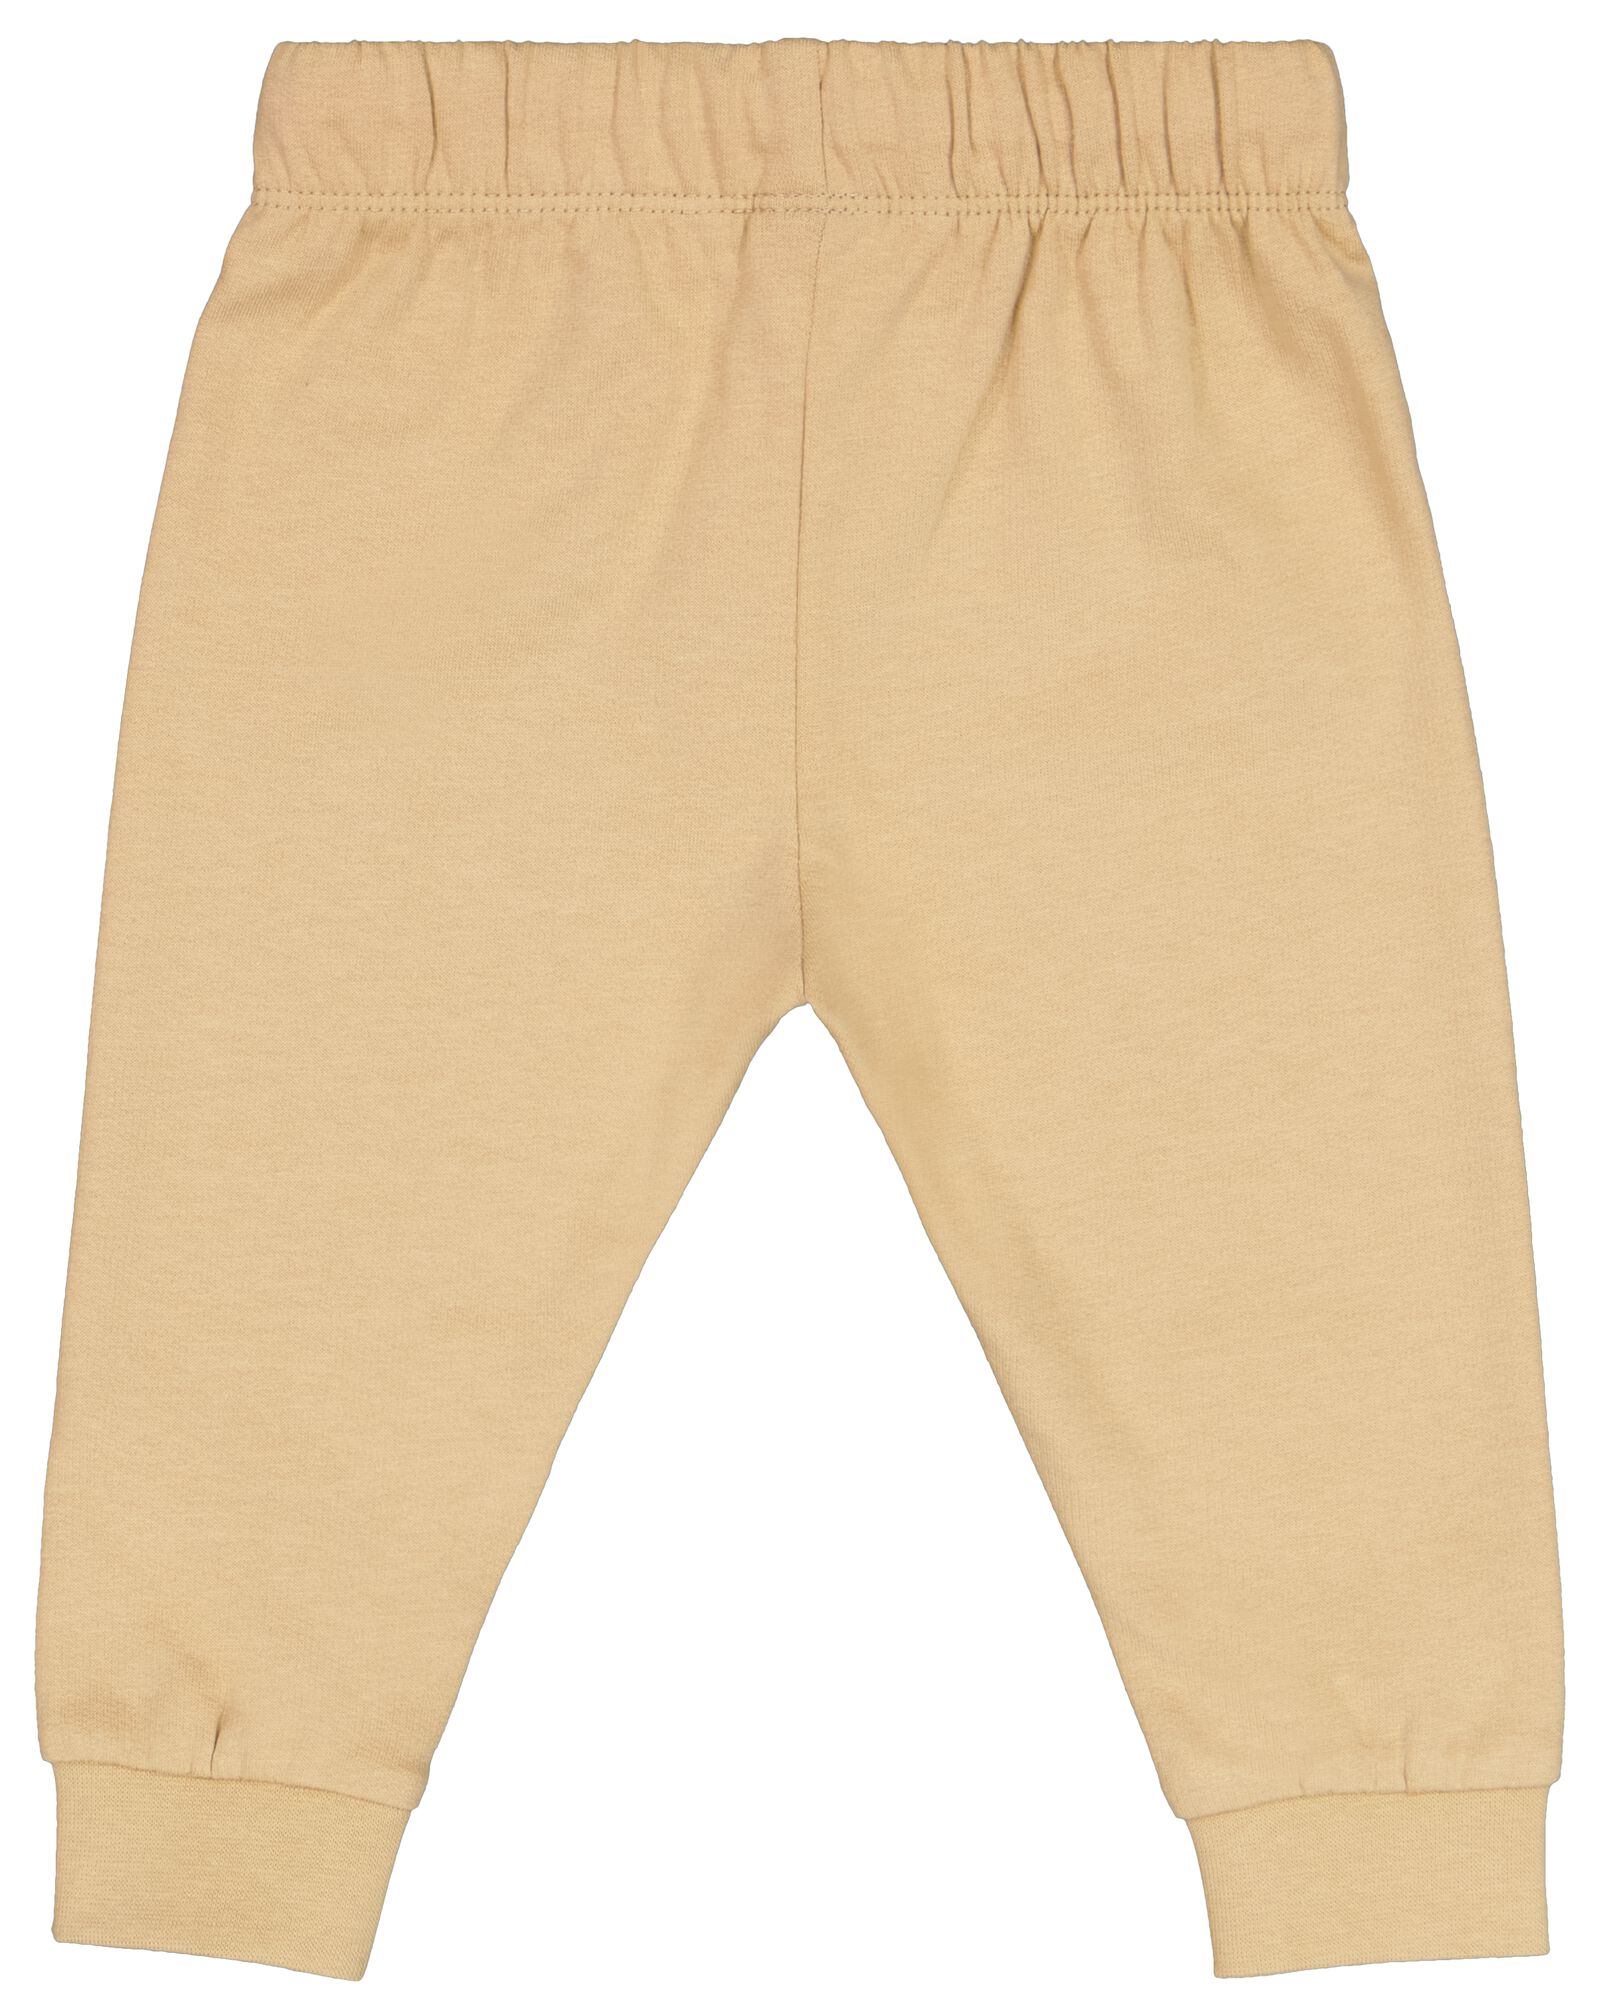 pantalon sweat bébé sable - 1000028208 - HEMA